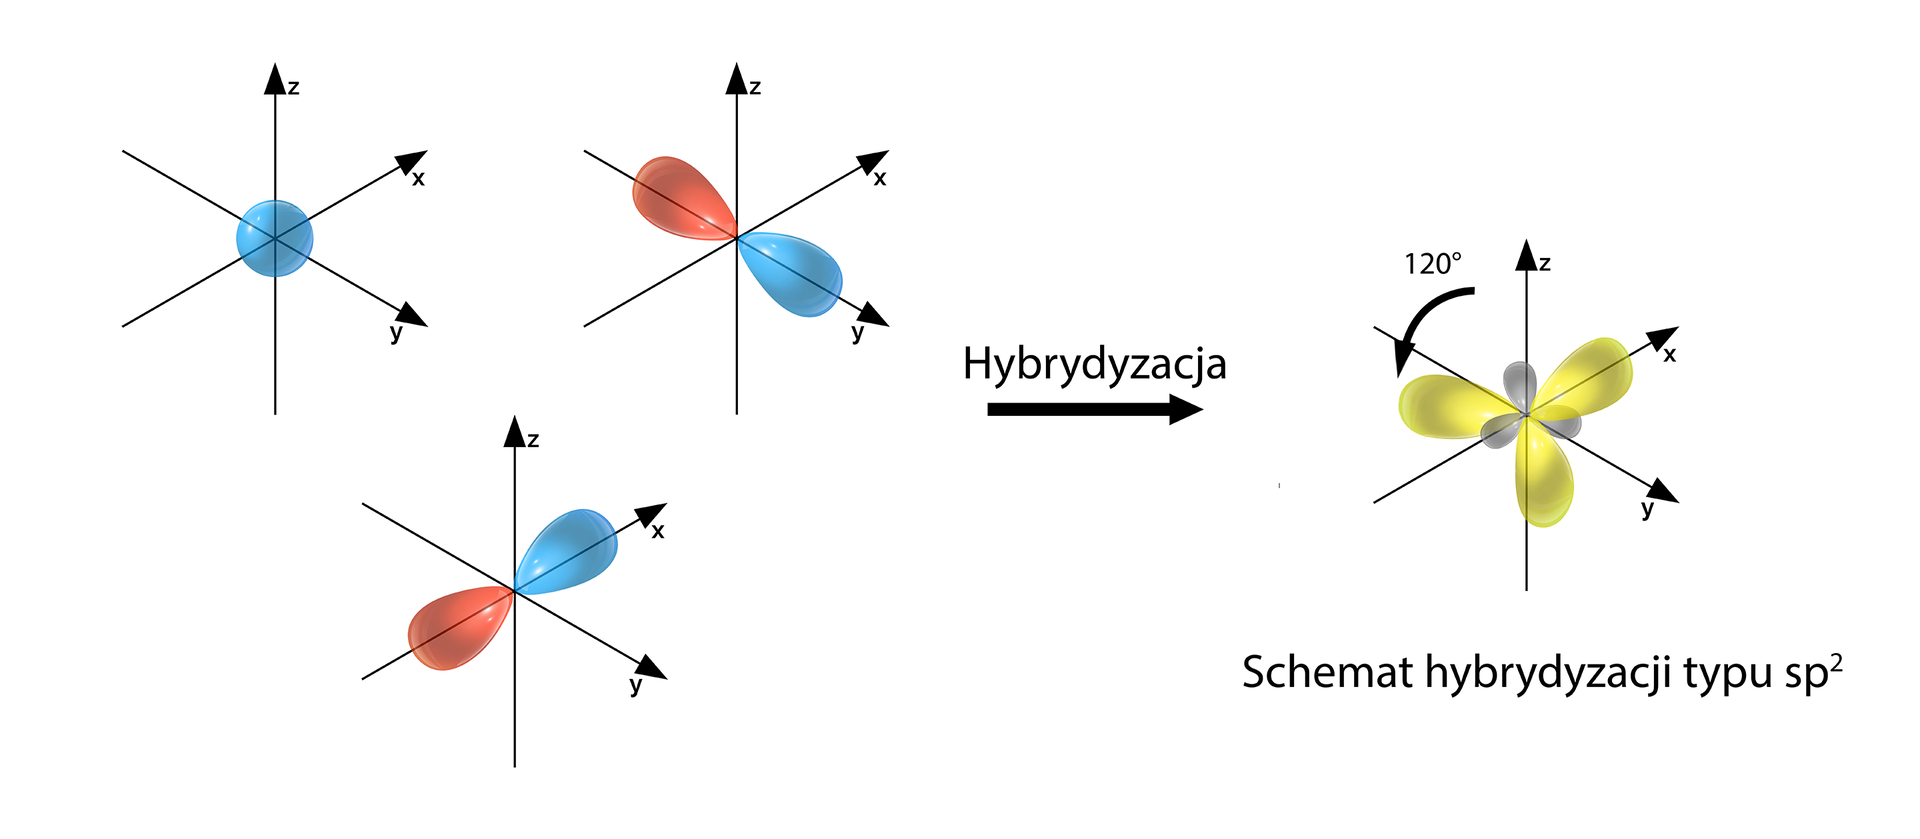 Schemat hybrydyzacji typu sp2 powstałej na skutek wymieszania się orbitali: jednego typu s i dwóch typu p. Po lewej stronie znajdują się trzy trójwymiarowe układy współrzędnych. W pierwszym orbital s, a w dwóch pozostałych po jednym orbitalu p. Za nimi na środku strzałka w prawo opisana "hybrydyzacja". Za strzałką po prawej stronie również znajduje się trójwymiarowy układ, w którym przedstawiono trzy orbitale zhybrydyzowane typu sp2. Wszystkie trójwymiarowe układy współrzędnych przedstawiono z zaznaczonymi osiami x, &lt;math aria‑label="igrek"&gt;y, &lt;math aria‑label="zet"&gt;z. Oś &lt;math aria‑label="zet"&gt;z jest pionowa i skierowana do góry, dwie pozostałe znajdują się w poziomie, przy czym oś x skierowana jest po skosie w prawo za płaszczyznę monitora, a oś &lt;math aria‑label="igrek"&gt;y po skosie w prawo przed płaszczyznę monitora. Pomiędzy osiami x &lt;math aria‑label="igrek"&gt;y występuje kąt prosty, podobnie pomiędzy osiami x &lt;math aria‑label="zet"&gt;z oraz &lt;math aria‑label="igrek"&gt;y &lt;math aria‑label="zet"&gt;z. W pierwszym układzie przedstawiono orbital s. Stanowi go kulista przestrzeń. Kula ma początek w układzie współrzędnych, ale nie należy do niego, stąd użycie pojęcia kulista przestrzeń. W drugim układzie znajduje się orbital px, który to rozmieszczony jest wzdłuż osi x. Składa się on z dwóch symetrycznych lobów. Razem tworzą one strukturę przestrzenną przypominającą trójwymiarową obracającą się wokół osi ósemkę. Jeden lob zaznaczony jest na czerwono i znajduje się on po stronie wartości ujemnych, a drugi na niebiesko i znajduje się on po stronie wartości dodatnich. Początek układu współrzędnych nie należy do funkcji. W kolejnym układzie znajduje się orbital&lt;math aria‑label="p indeks dolny igrek koniec indeksu"&gt;py, który to rozmieszczony jest wzdłuż osi &lt;math aria‑label="igrek"&gt;y. Składa się z dwóch symetrycznych lobów. Razem tworzą one strukturę przestrzenną przypominającą trójwymiarową obracającą się wokół osi ósemkę. Ponownie jeden lob zaznaczony jest na czerwono, a drugi na niebiesko.   W ostatnim układzie za strzałką przedstawione są trzy zhybrydyzowane orbitale sp2. Powstałe orbitale stanowią każdy jeden duży i jeden mały lob, odchodzące od początku układu współrzędnych. Loby te zorientowane są w płaszczyźnie x &lt;math aria‑label="igrek"&gt;y. Pierwszy orbital rozmieszony jest wzdłuż osi x, przy czym duży lob po stronie wartości dodatnich na osi x, a mały po stronie ujemnych. Pozostałe dwa duże loby zlokalizowane są odpowiednio w trzeciej i czwartej ćwiartce wspomnianej płaszczyzny wyznaczonej przez osie x &lt;math aria‑label="igrek"&gt;y. Z kolei małe loby znajdują się w pierwszej i w drugiej ćwiartce. Pomiędzy orbitalami występują kąty wynoszące sto dwadzieścia stopni.